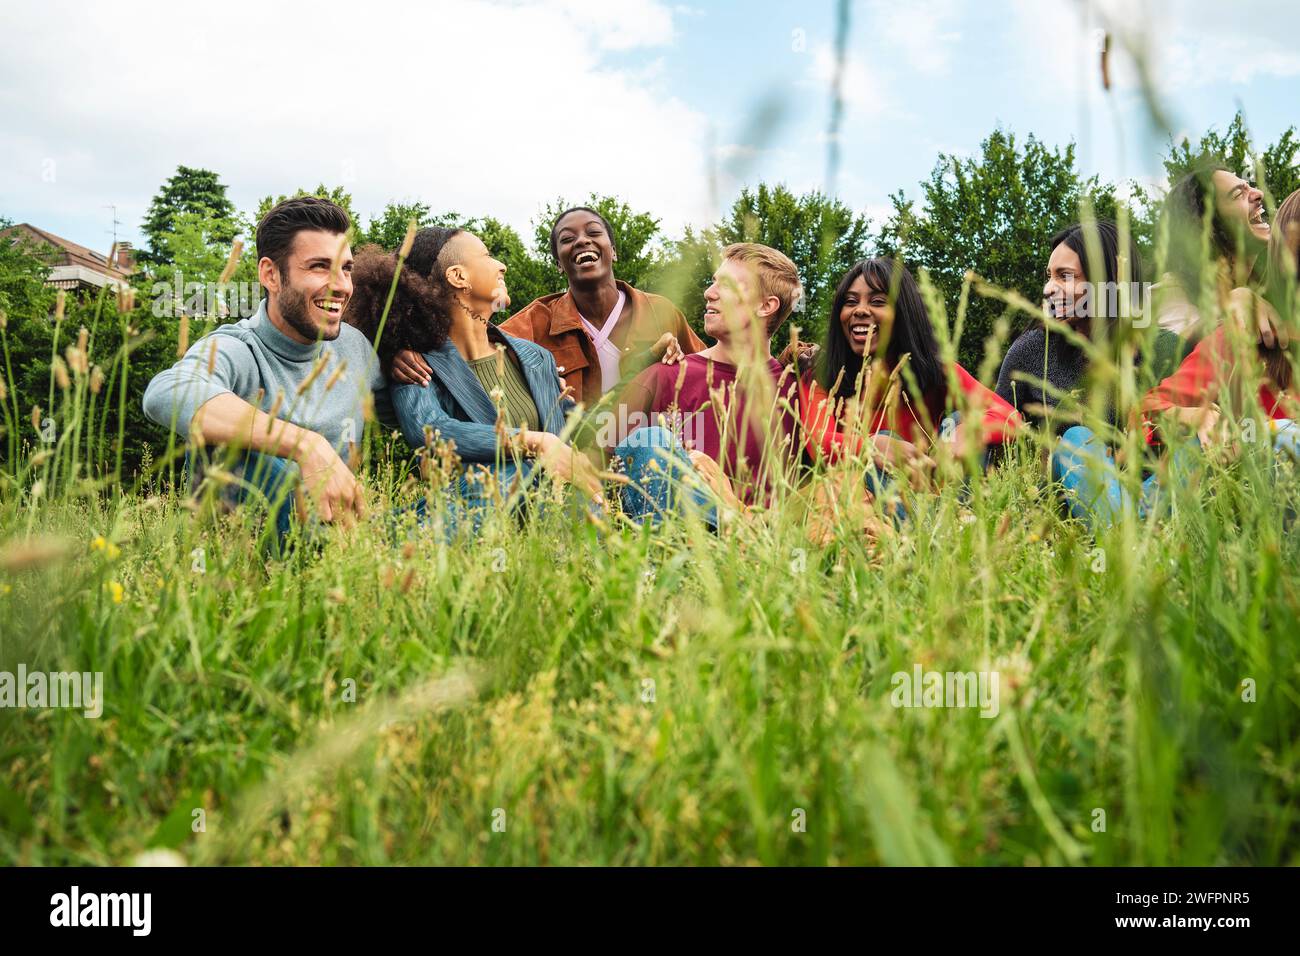 Eine vielfältige Gruppe junger Menschen lacht und genießt einen entspannenden Moment, umgeben von üppigem Grün, was die Freude an Freundschaft unterstreicht. Stockfoto